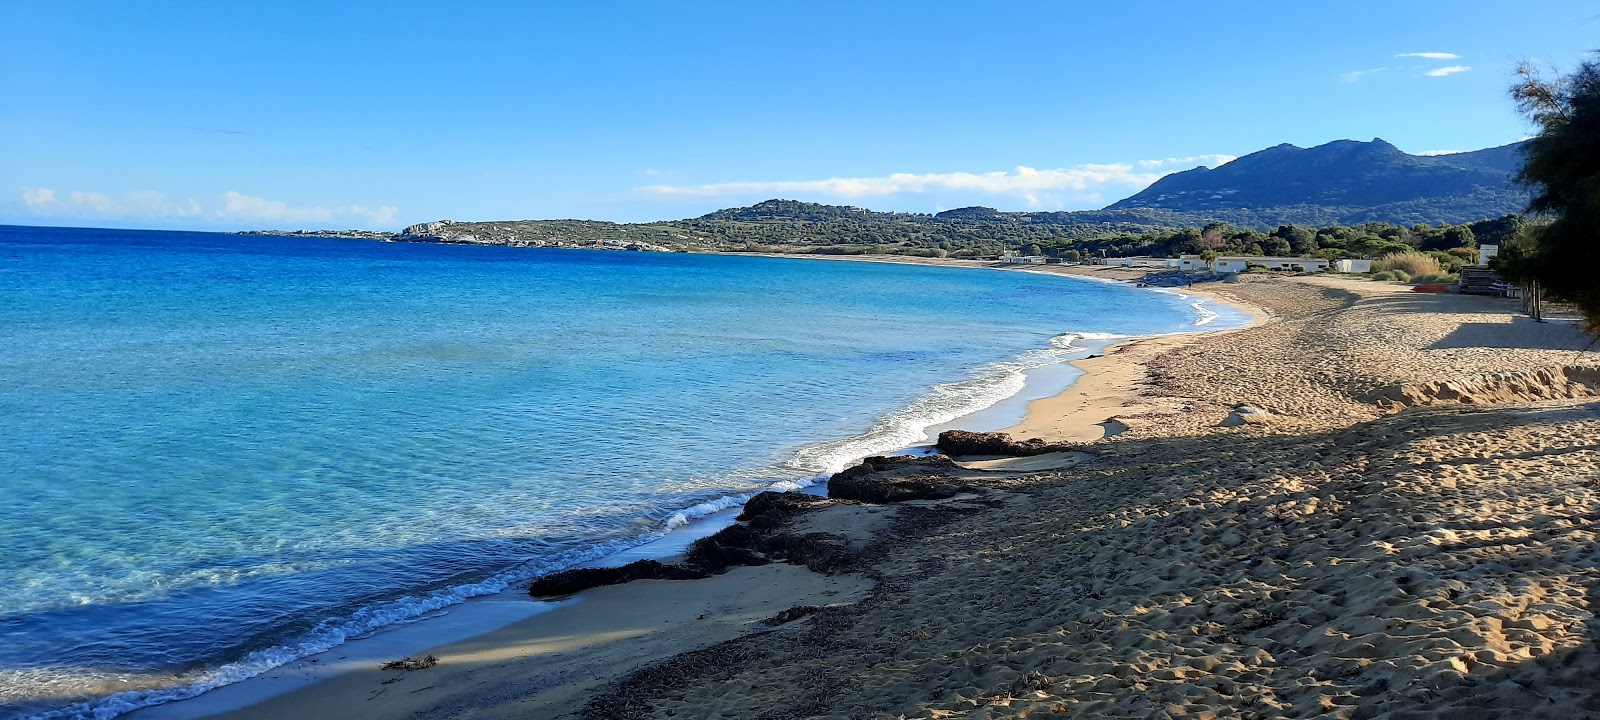 Foto von Aregno Strand und seine wunderschöne Landschaft